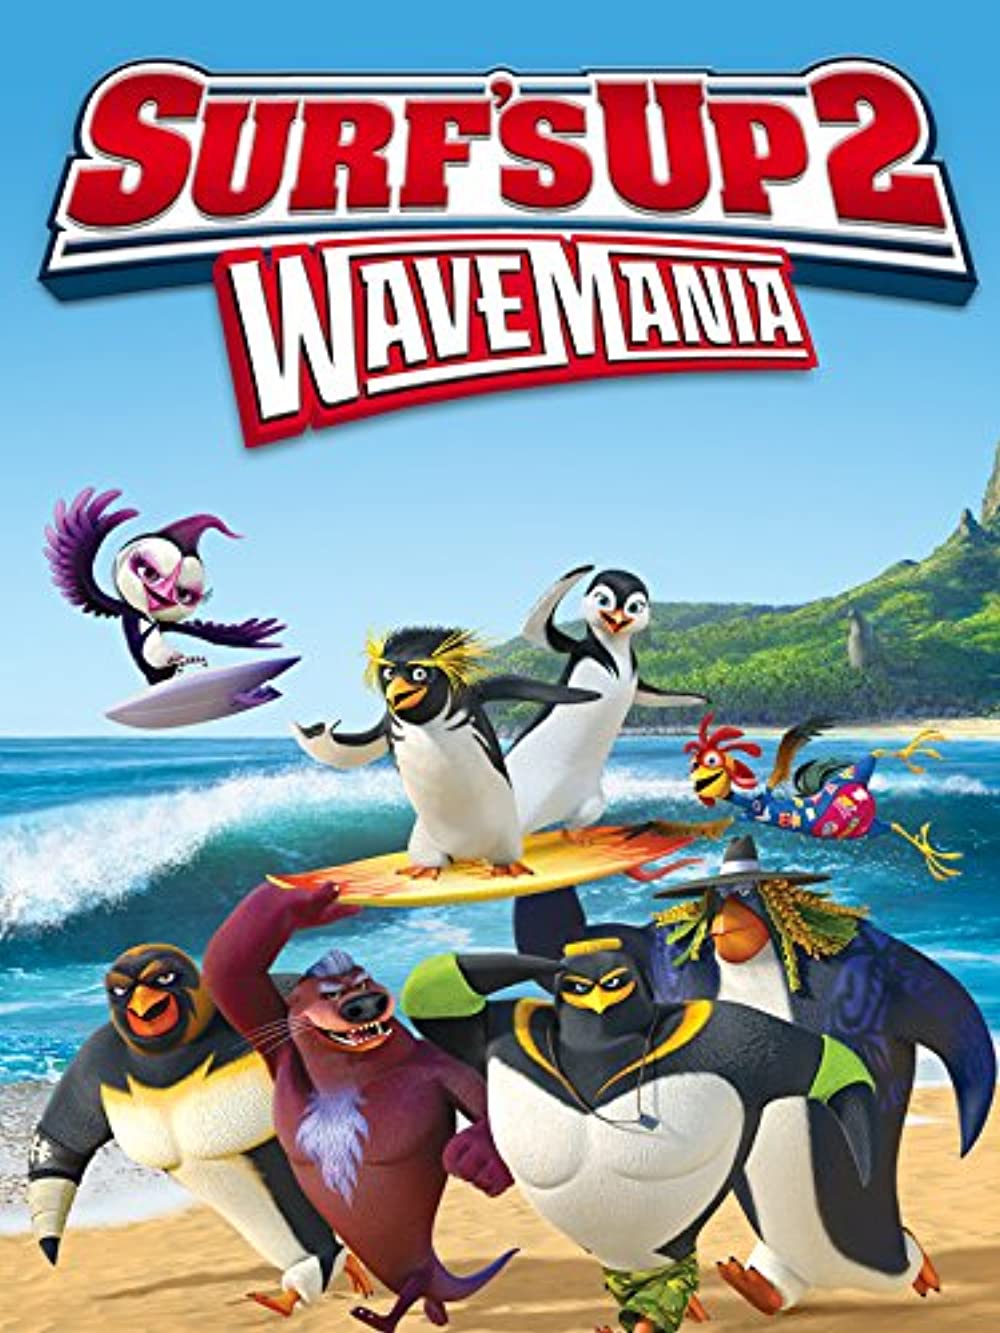 ดูหนังออนไลน์ฟรี SURF S UP 2 WAVEMANIA (2017) เซิร์ฟอัพ ไต่คลื่นยักษ์ซิ่งสะท้านโลก 2